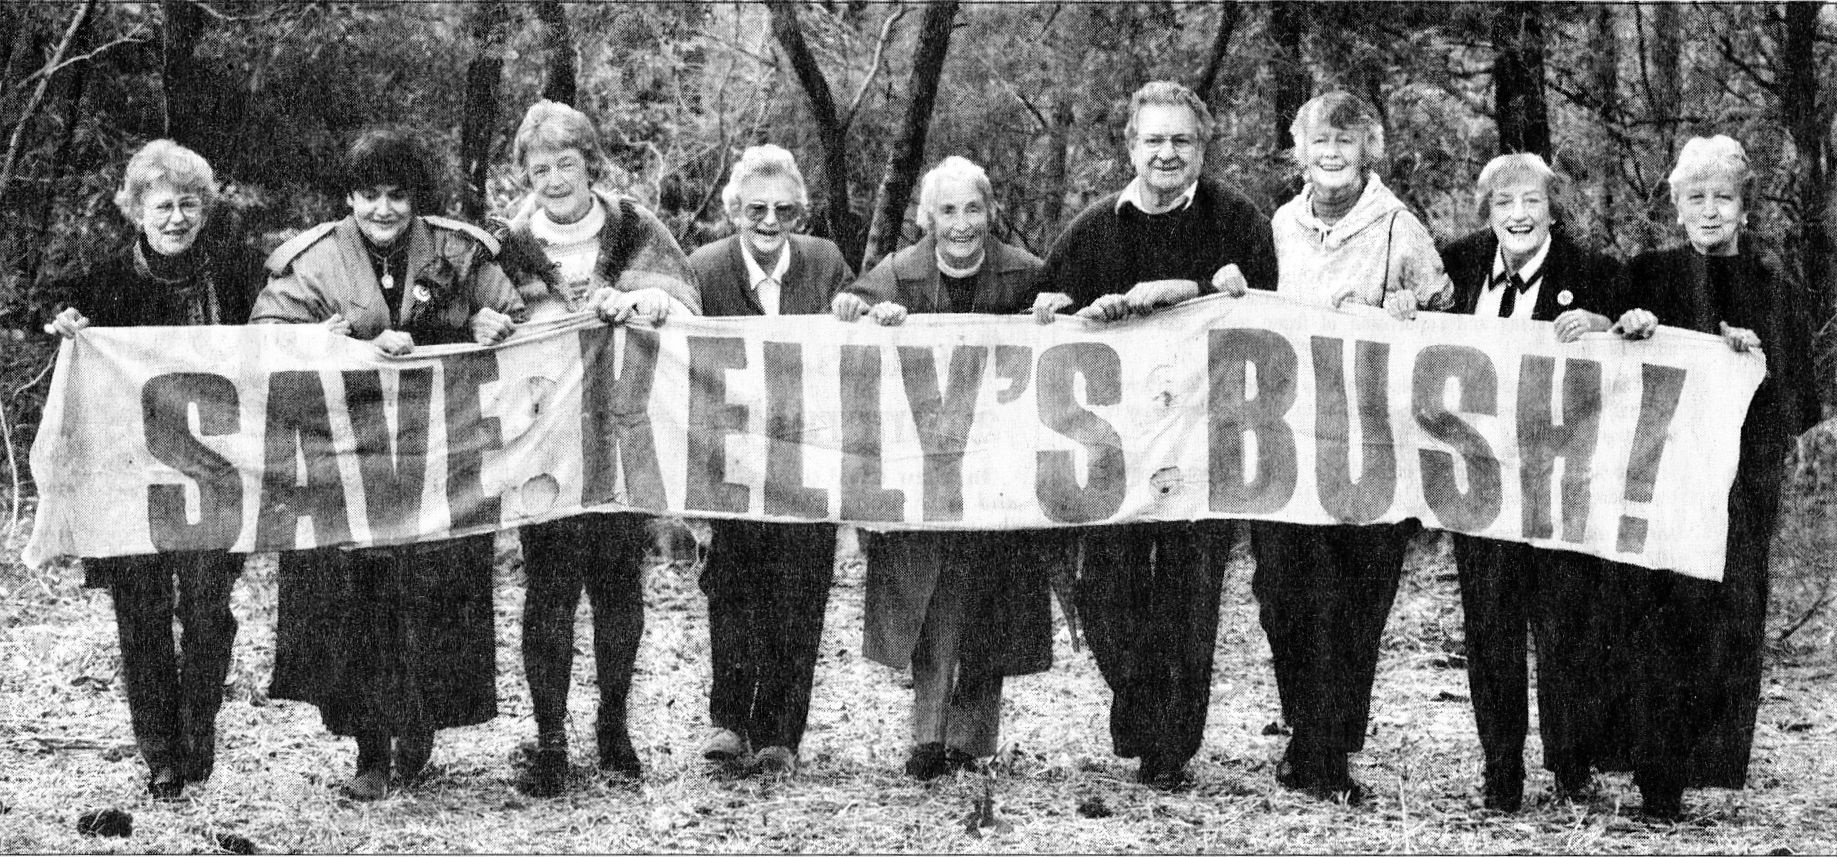 Kelly's Bush Battlers